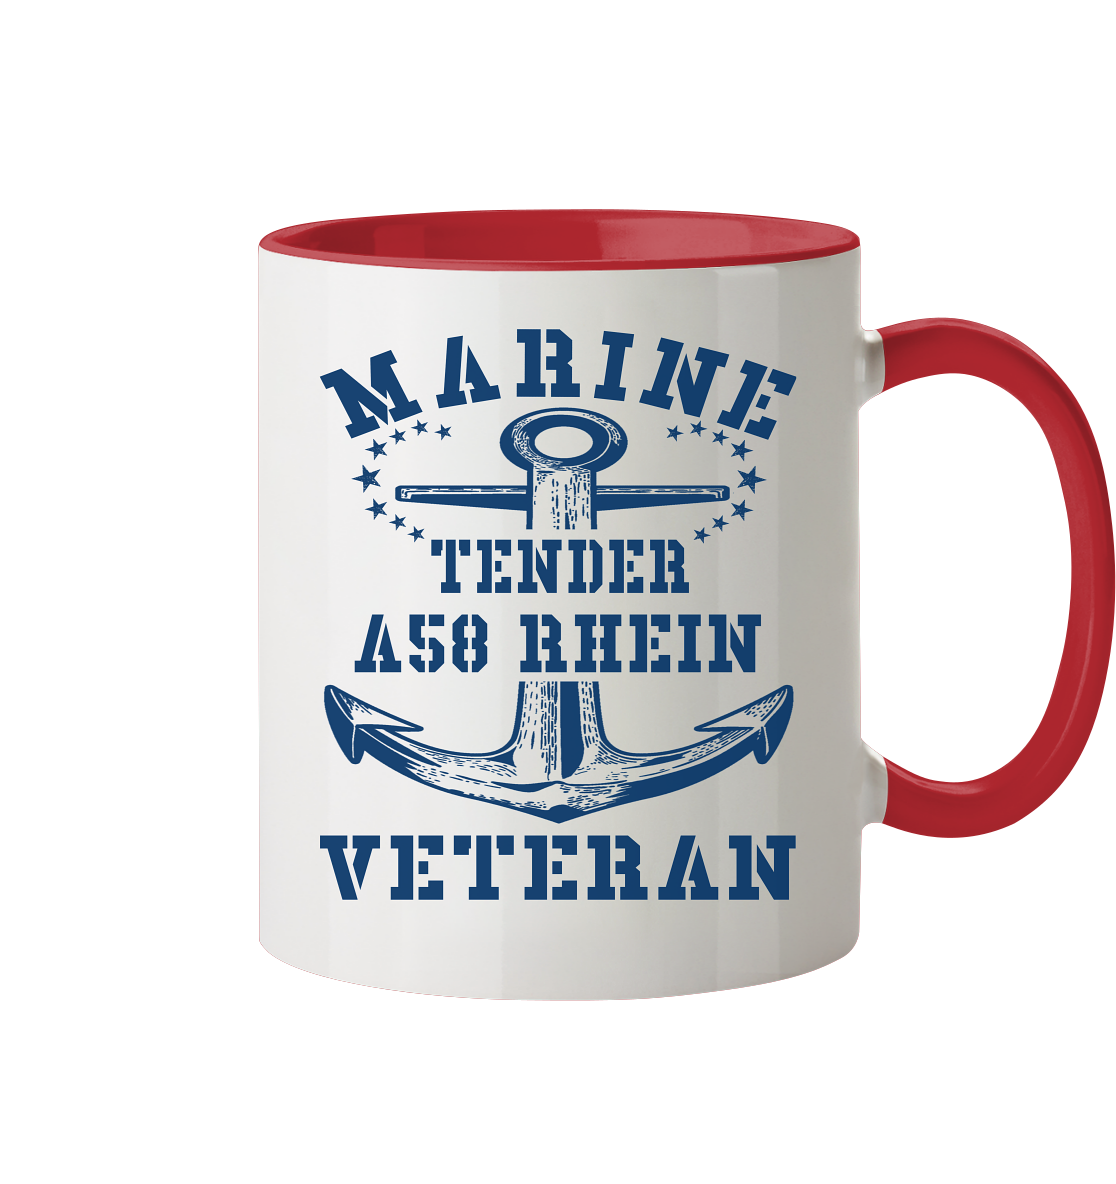 Tender A58 RHEIN Marine Veteran - Tasse zweifarbig